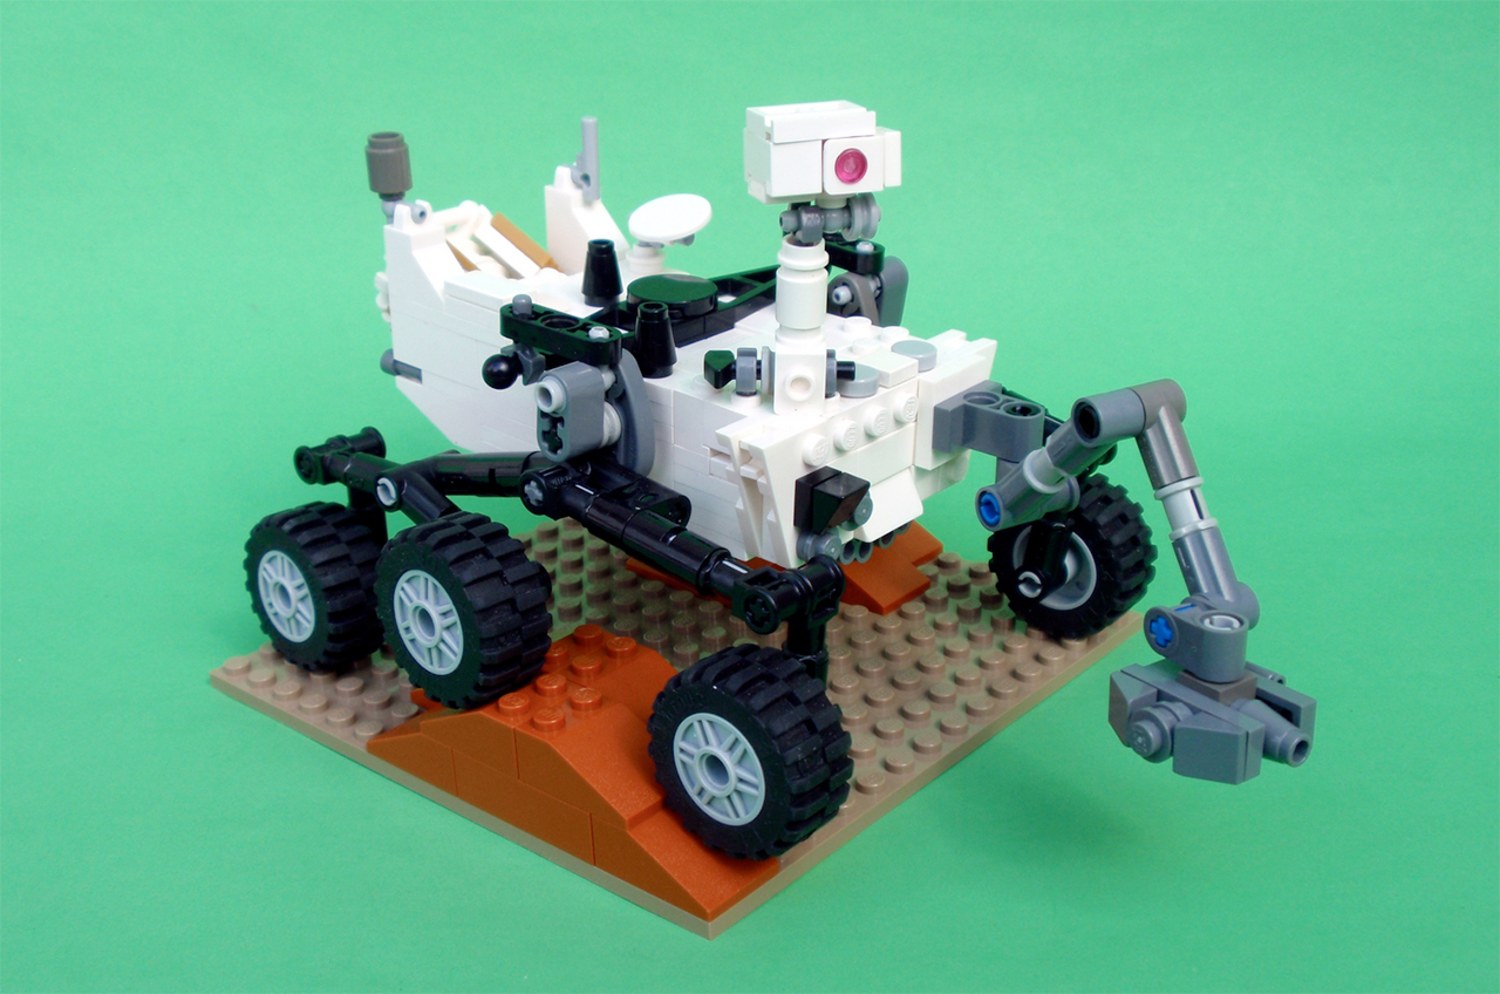 How your own LEGO Mars rover Curiosity